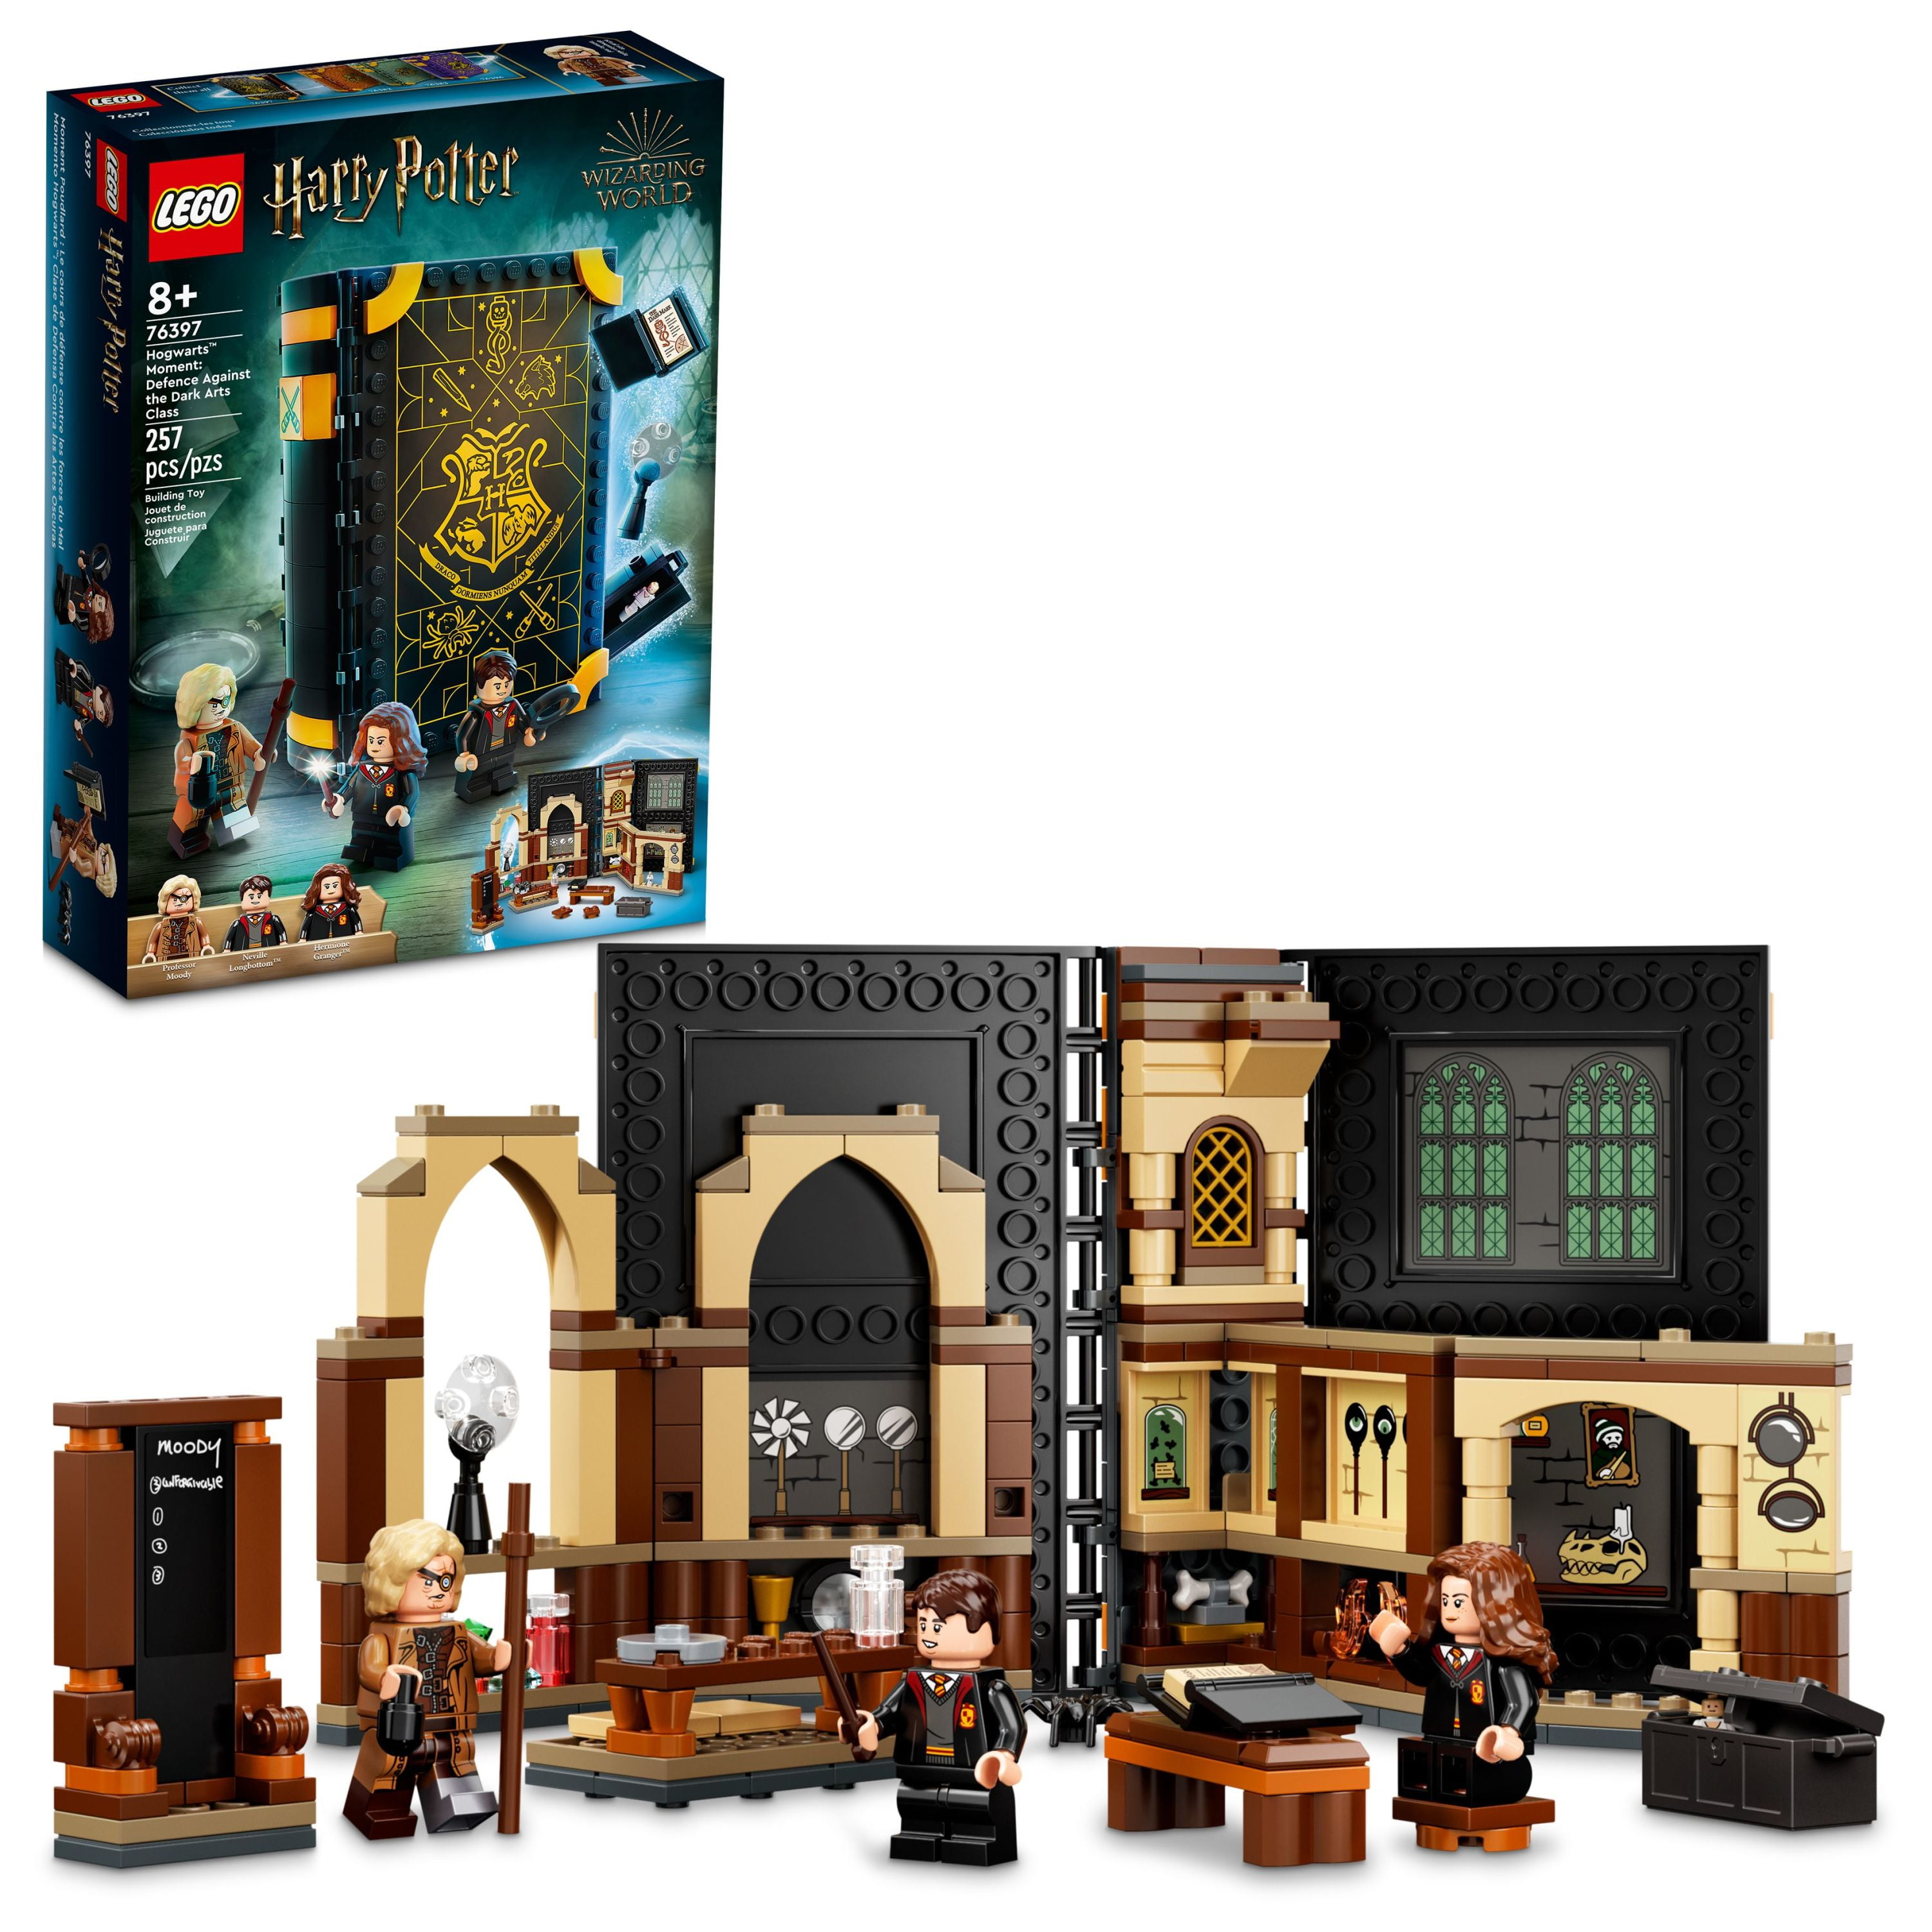 Harry Movie Hogwarts Castle Building Block Brick Birthday Gift Toy Children Boy 